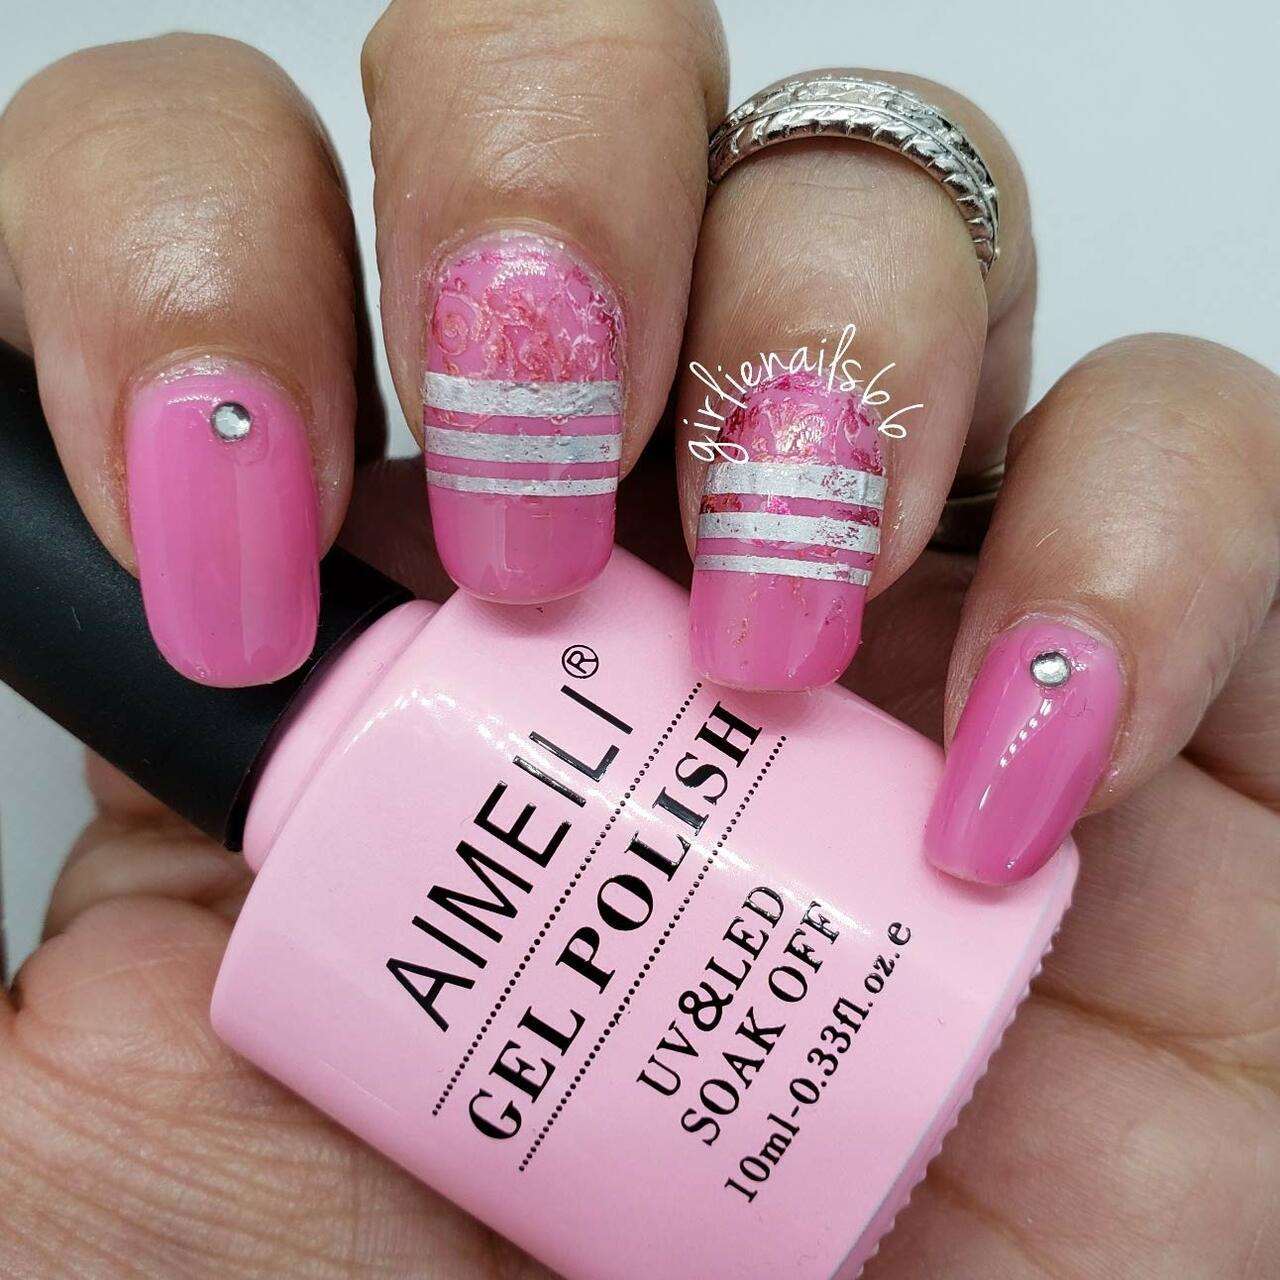 Aimeili Pretty Bubblegum Pink Gel Polish for Cute Sweet Nail Ideas Art